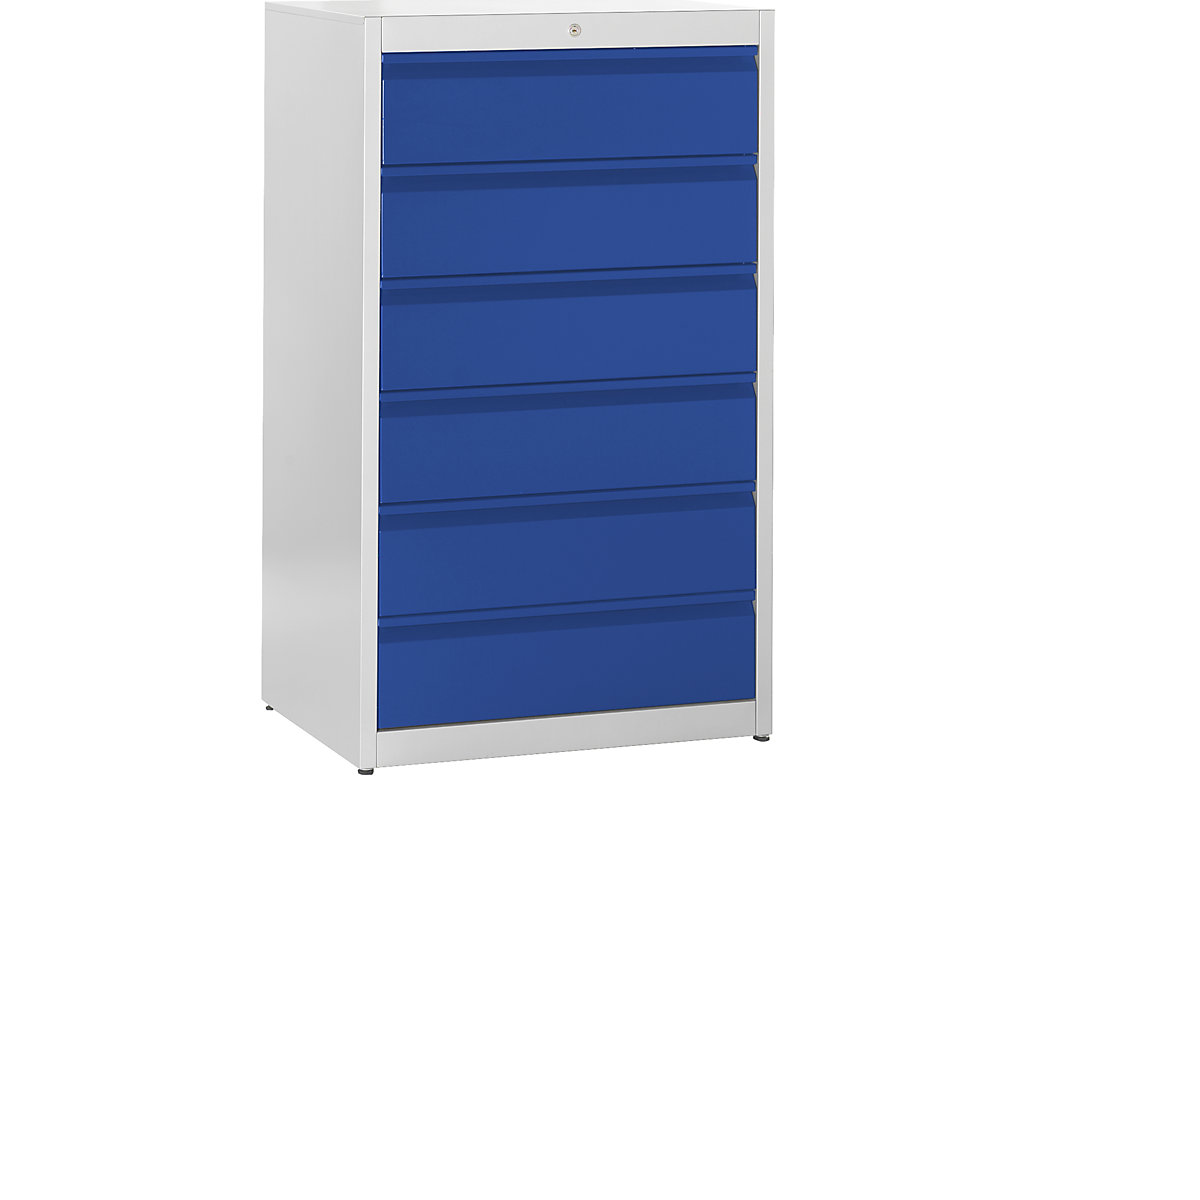 Kartotečni predalnik, oprijemalne letve – mauser, 6 predalov, 3 vrste, svetlo siva/ultramarin modra-4